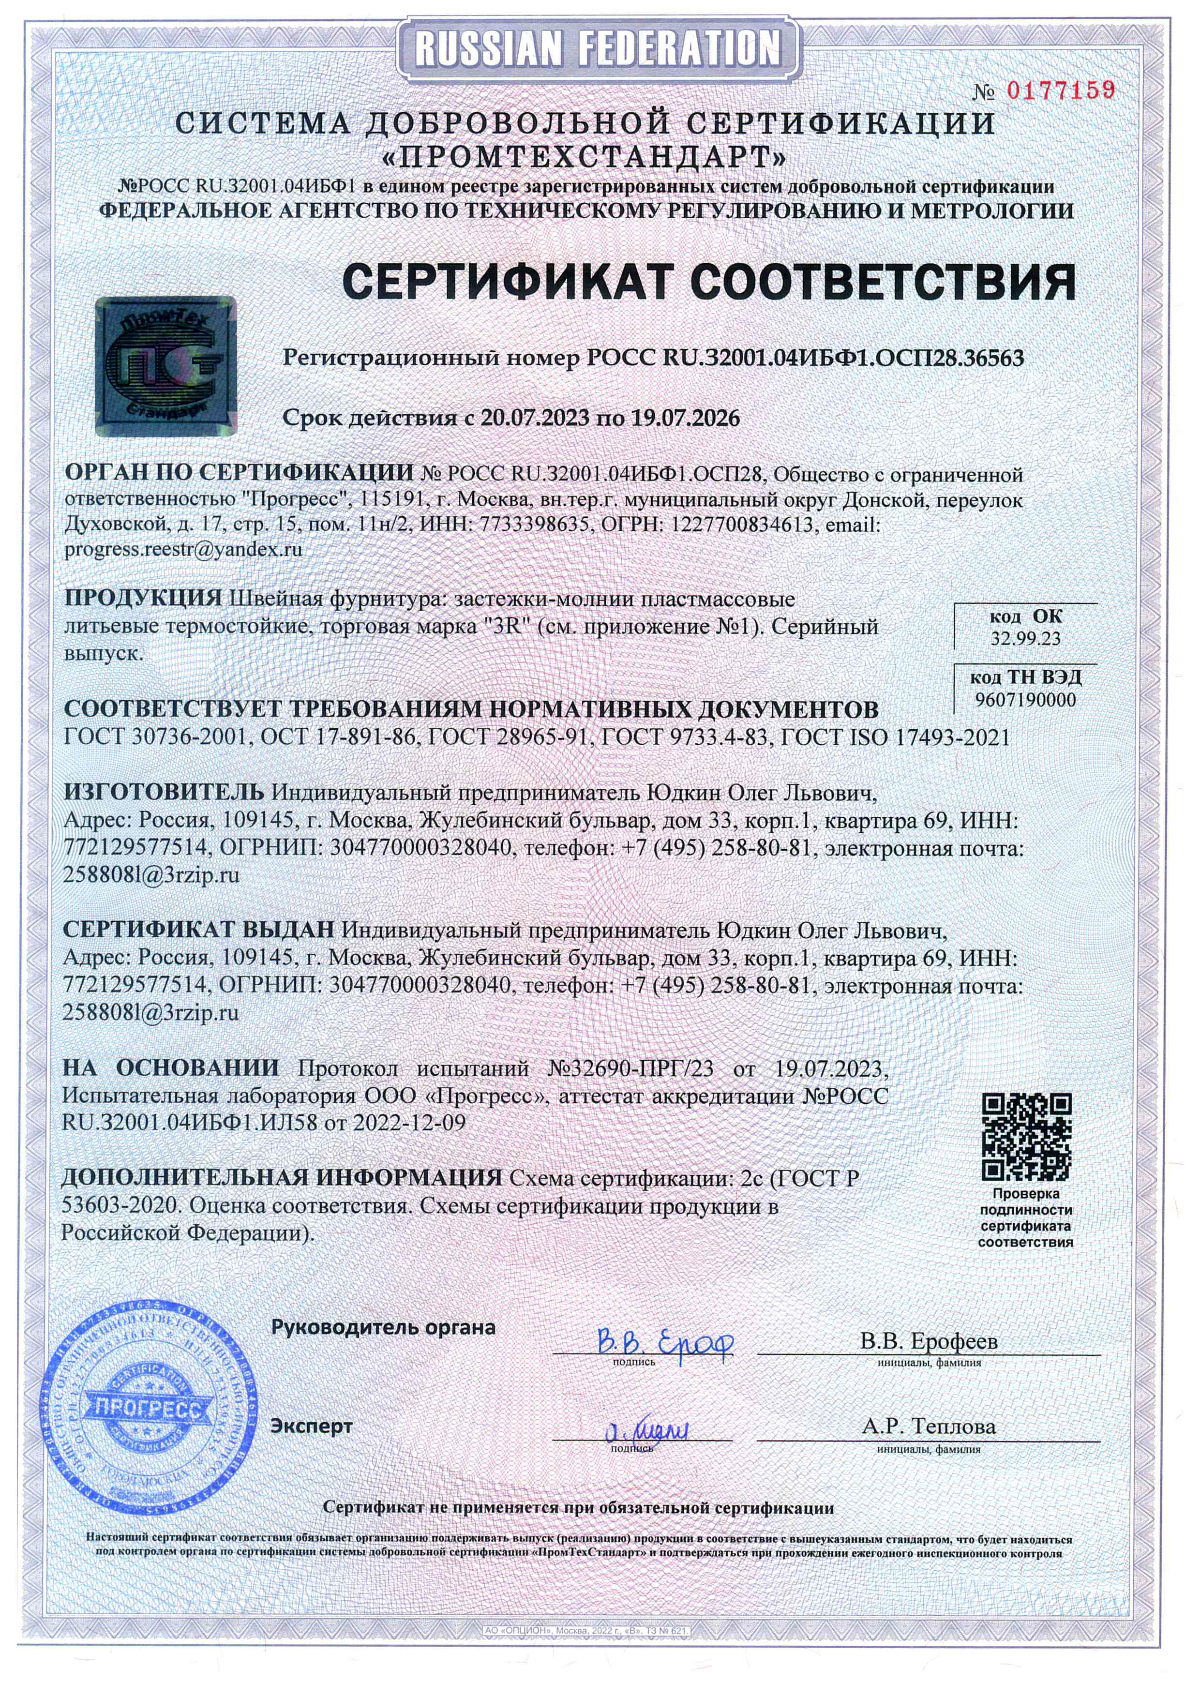 Сертификат соответствия Застёжки молнии пластиковые термостойкие